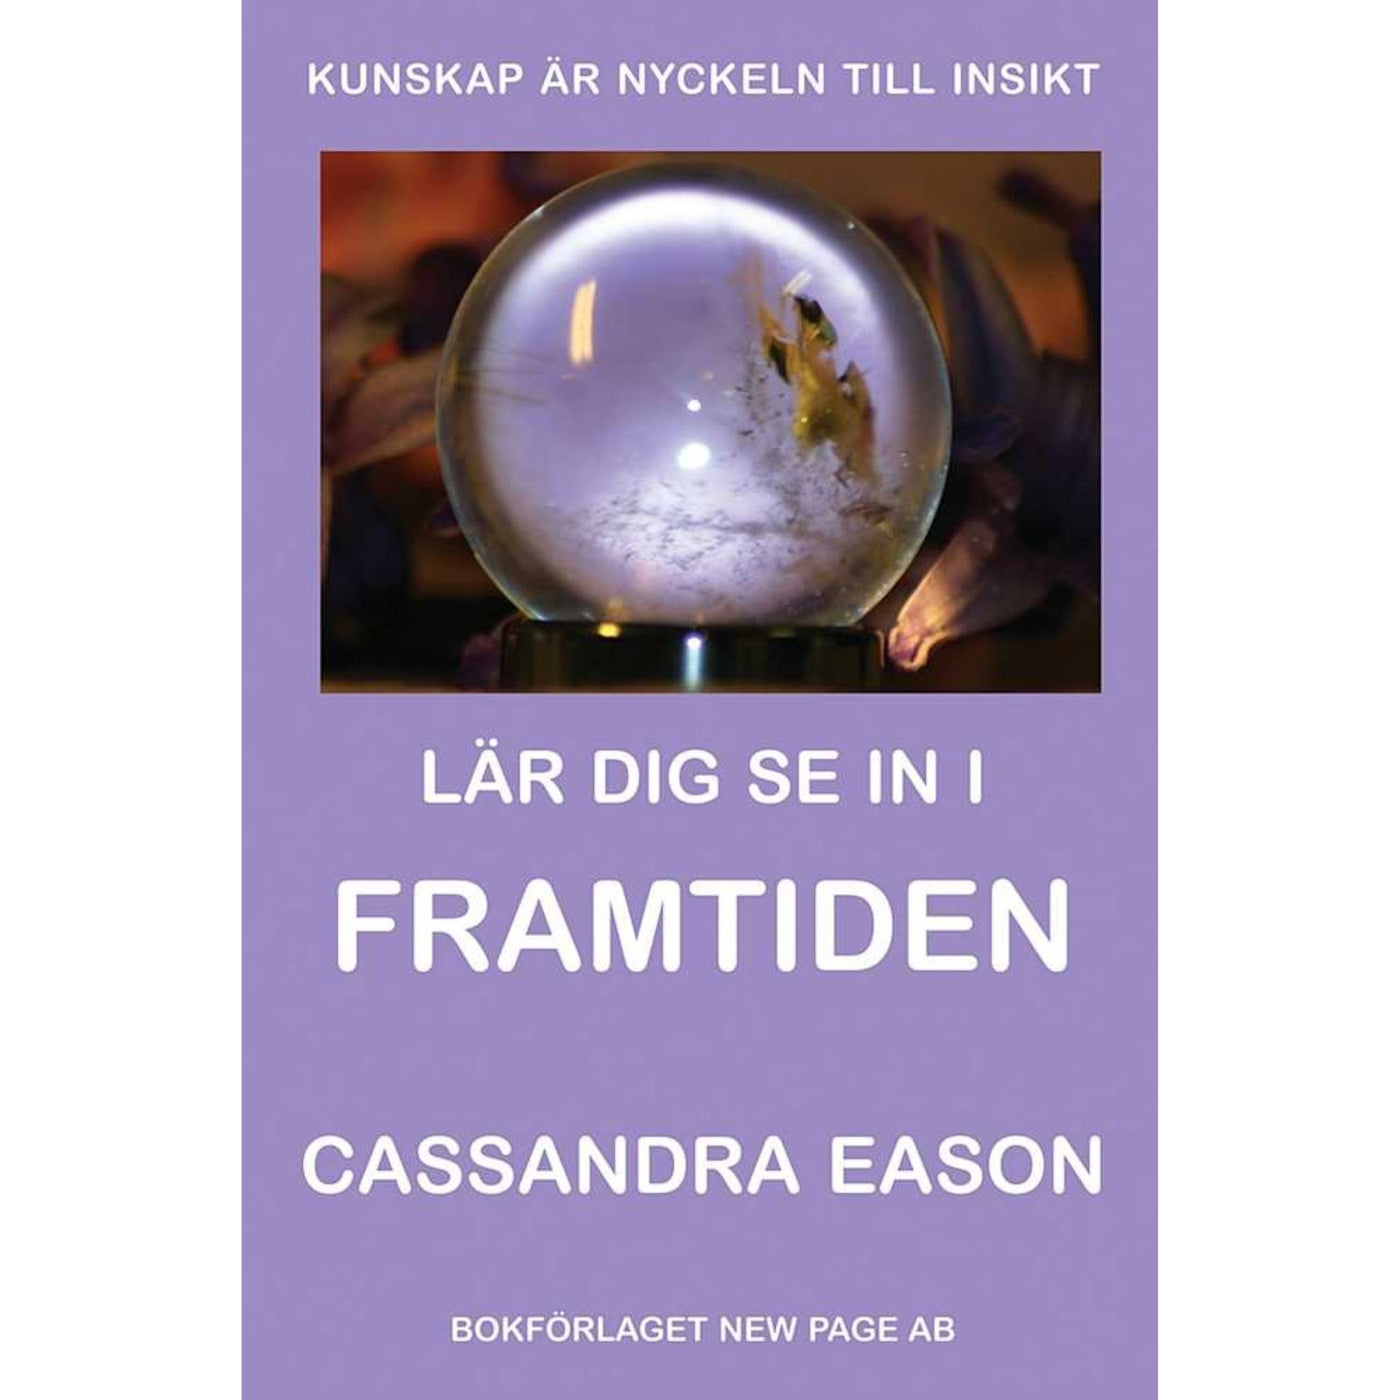 Lär dig se in i framtiden - bok av Cassandra Eason